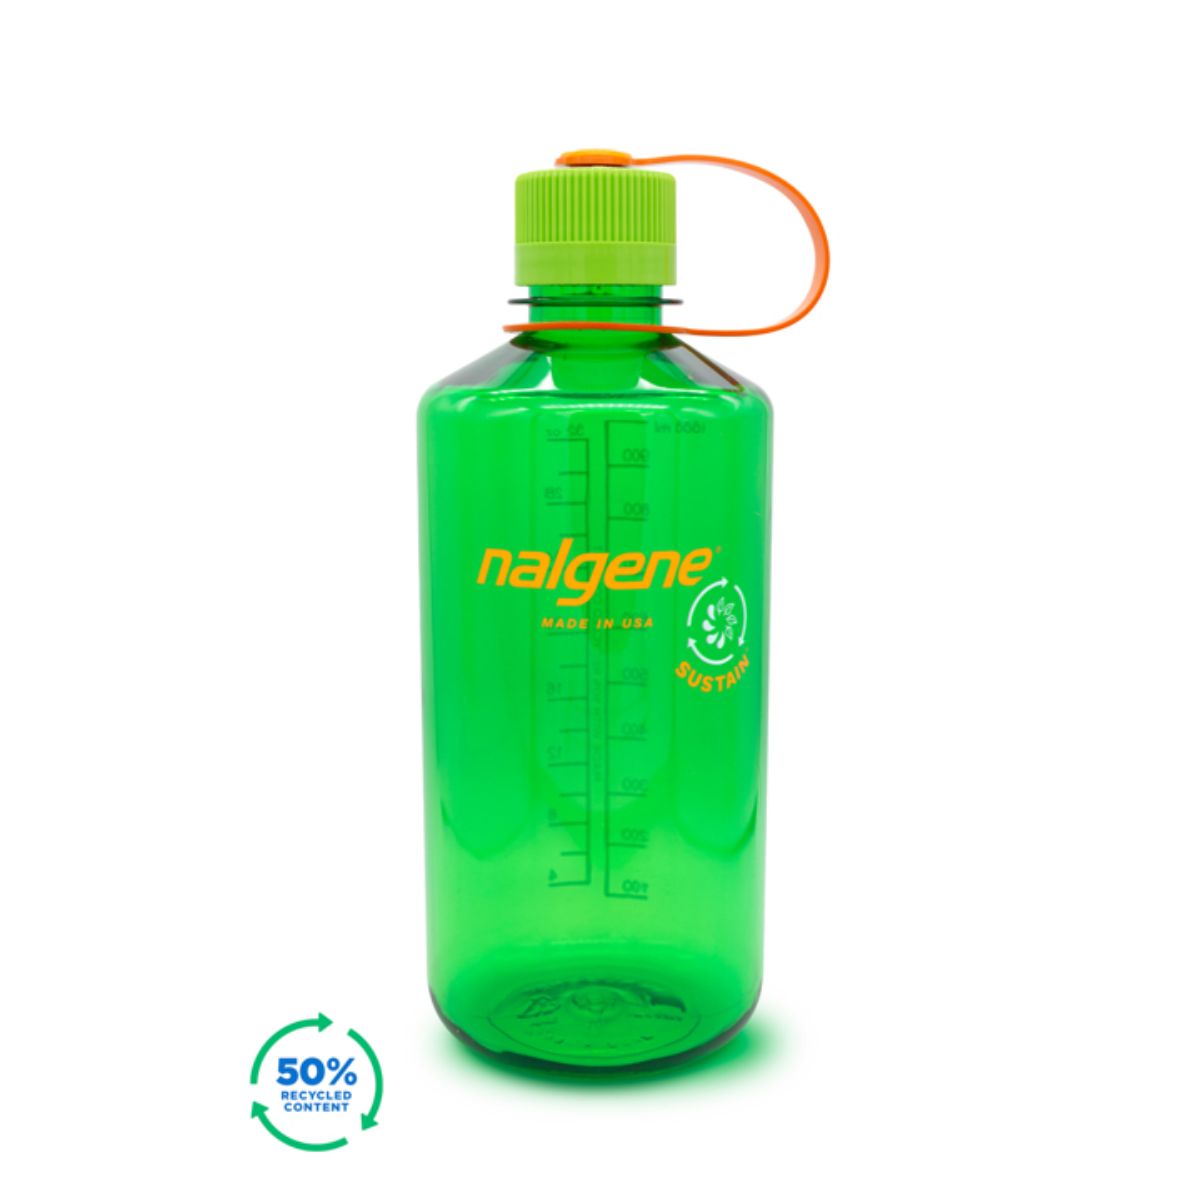 grønn drikkeflaske som rommer 1 liter drikke. Drikketut med skrukork